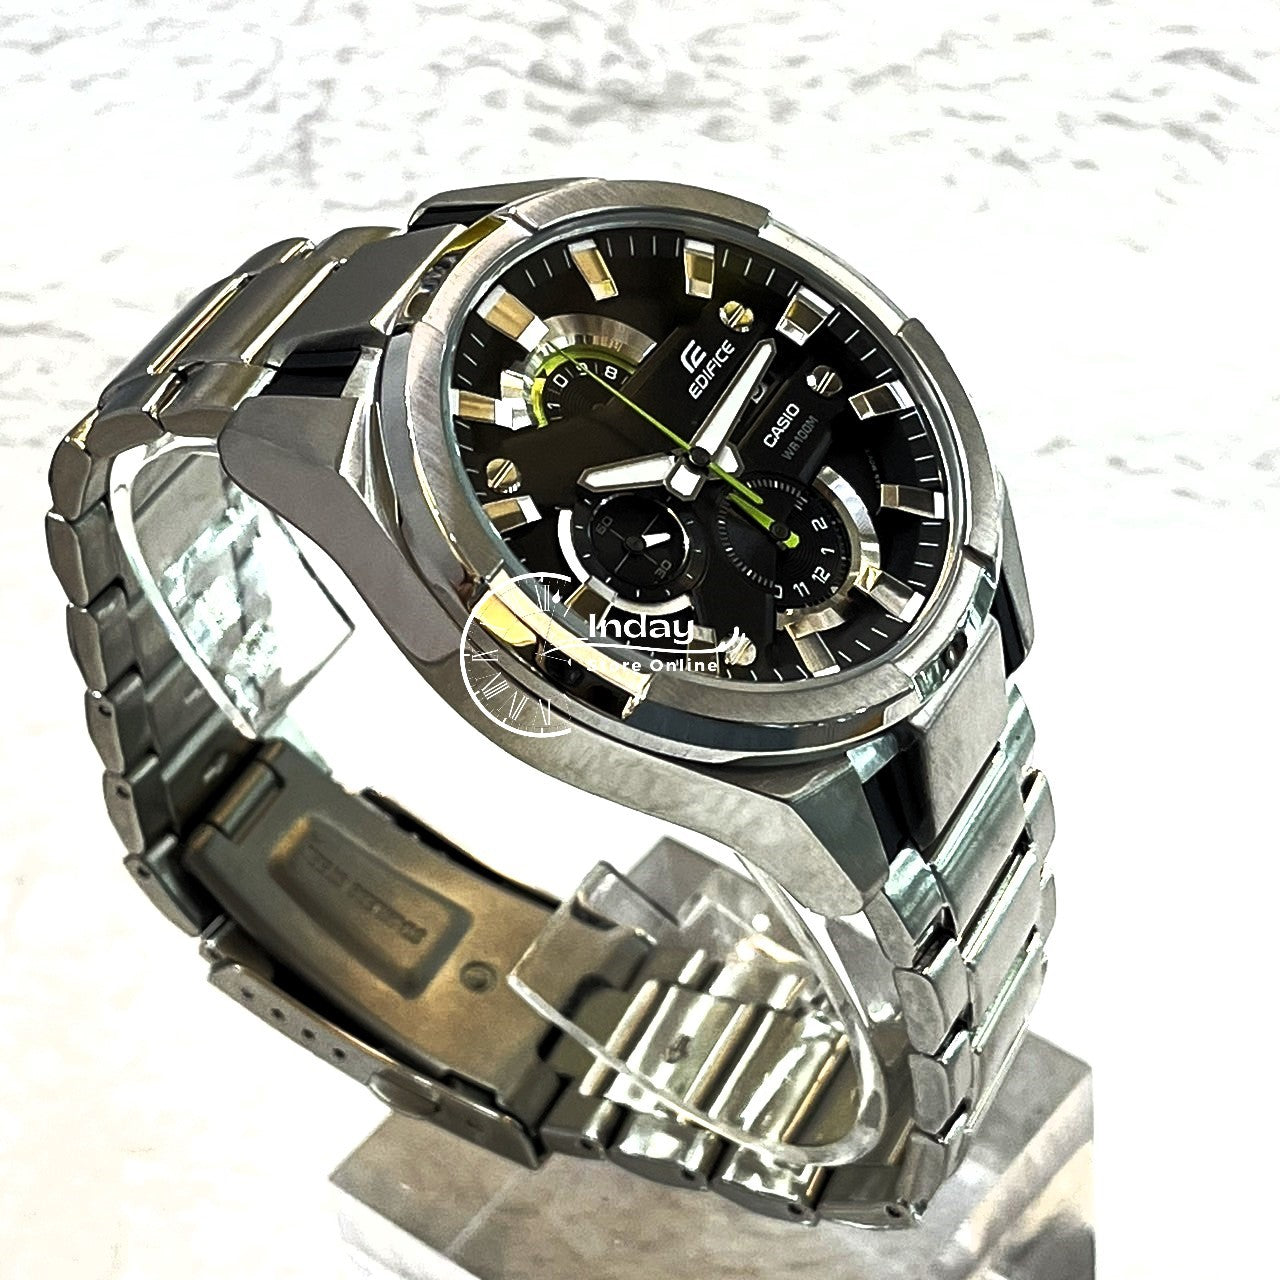 Casio Edifice Men's Watch EFR-540D-1